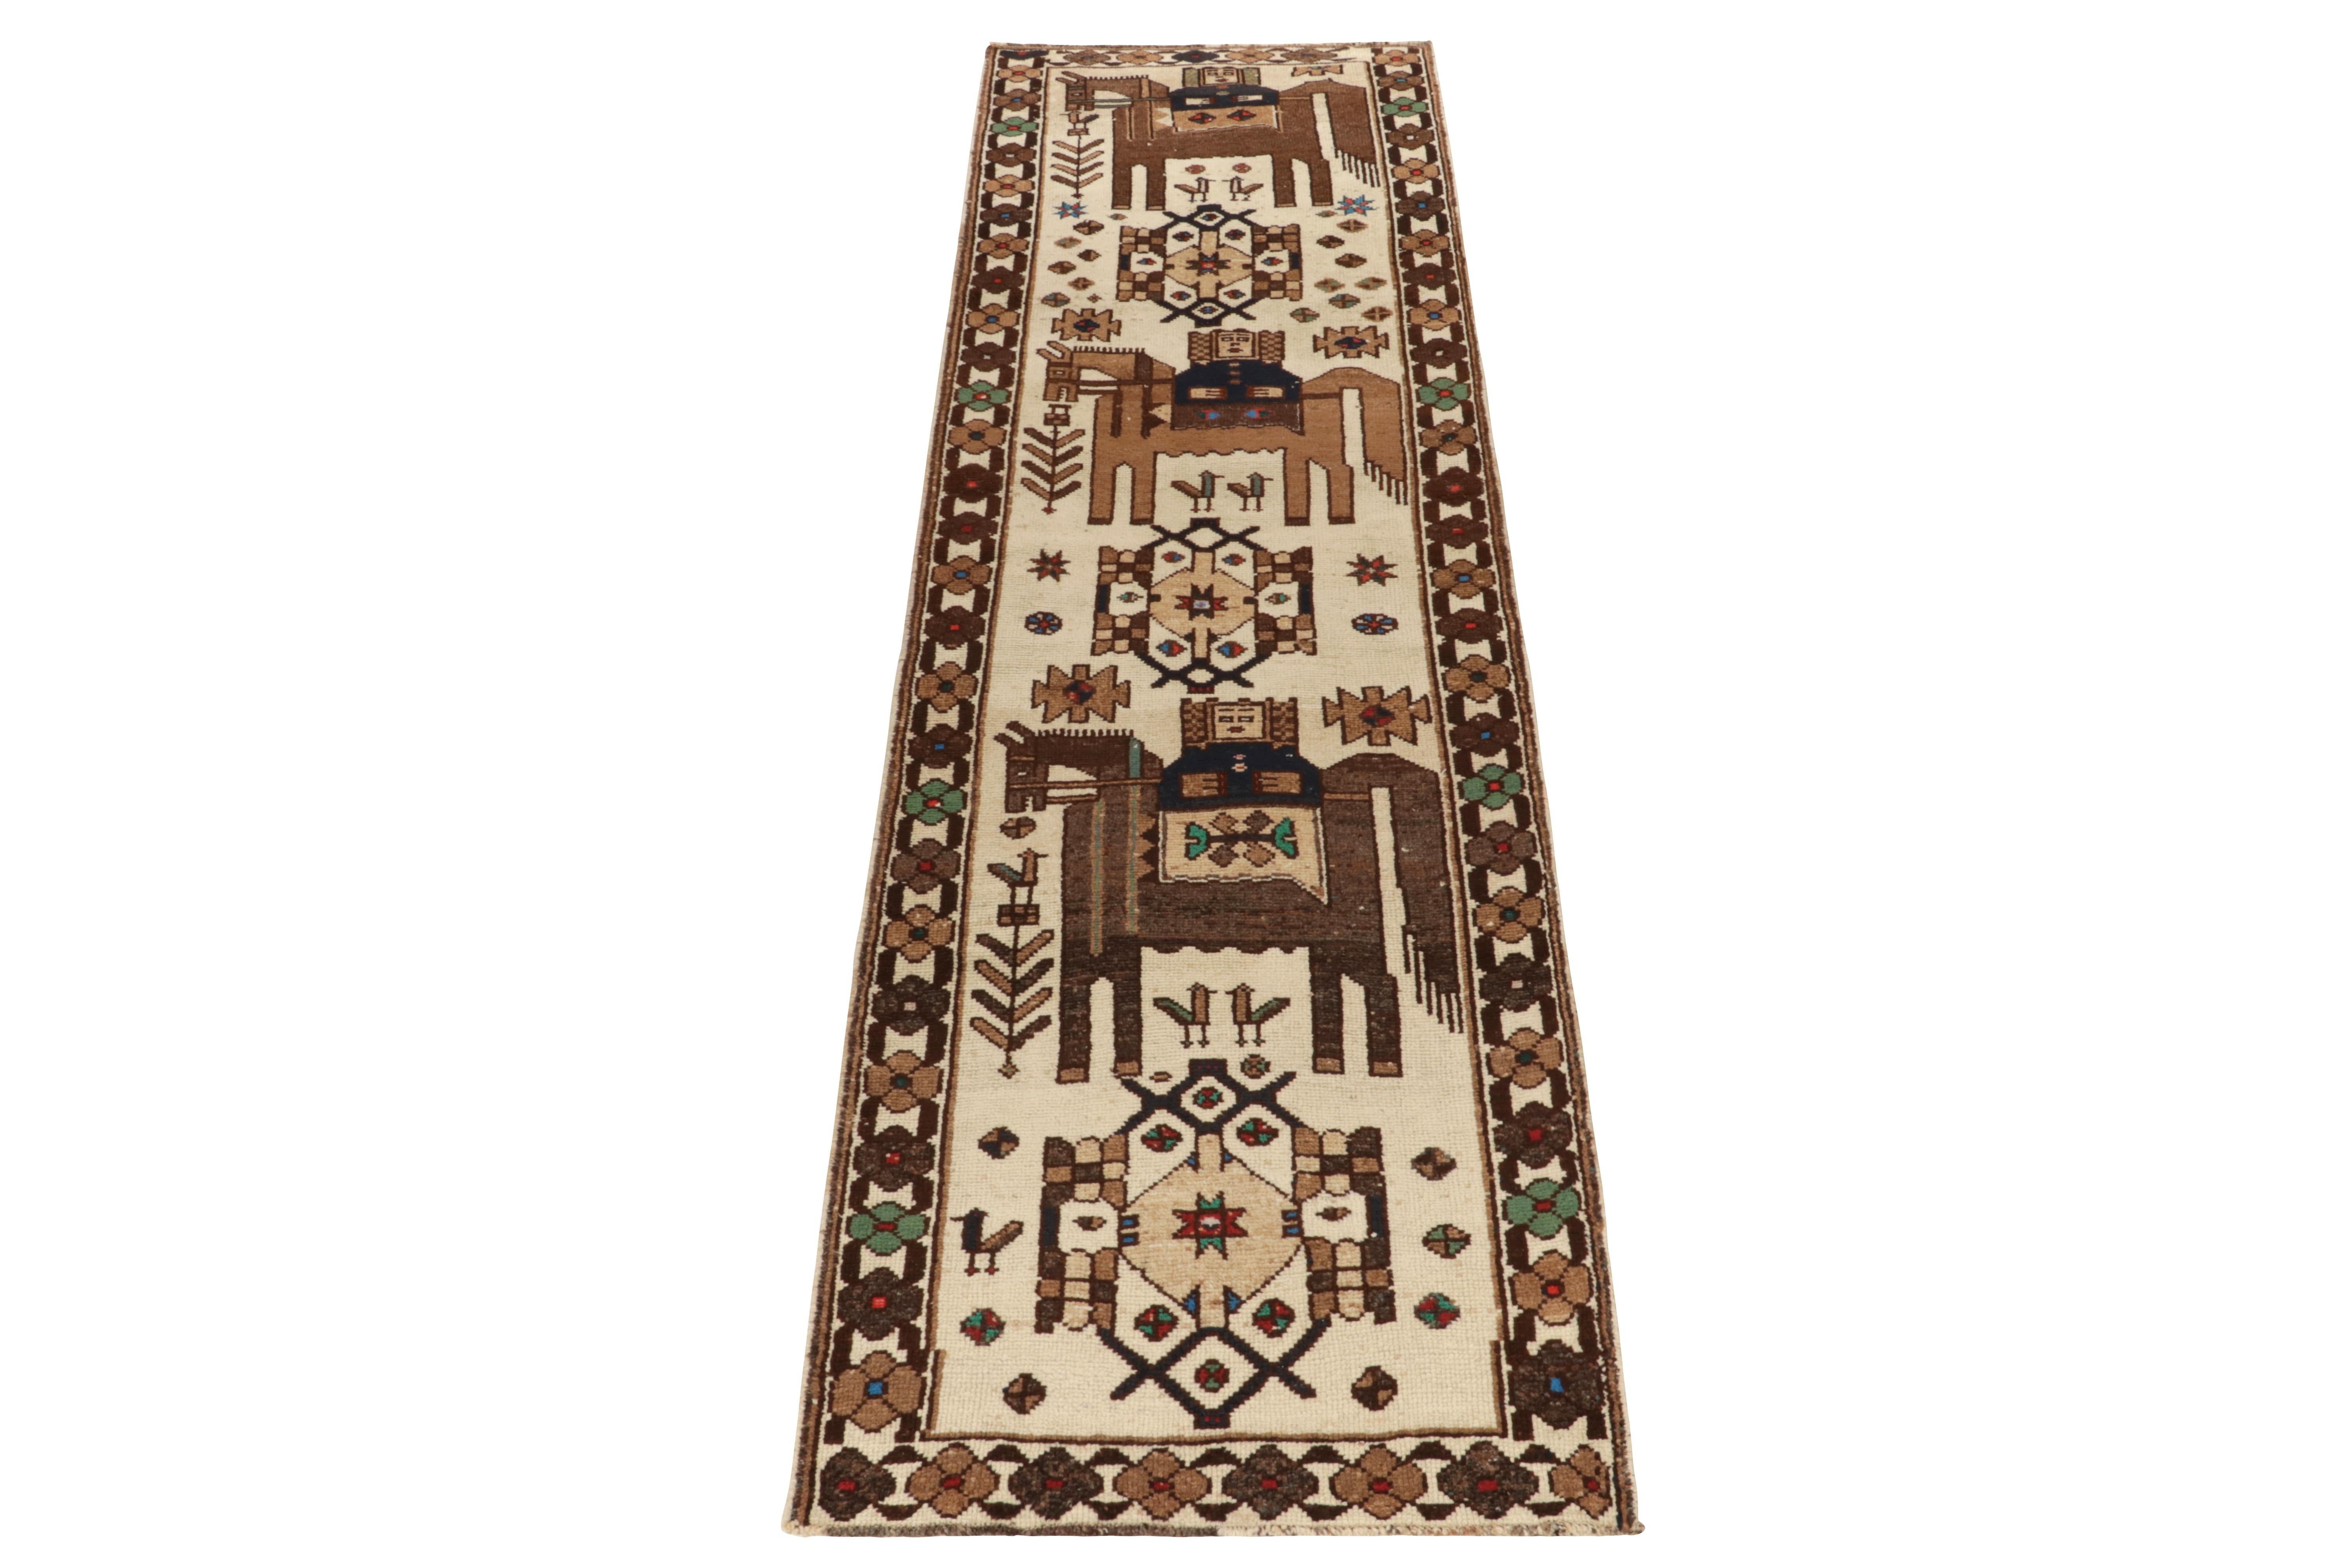 Noué à la main en laine, un tapis 4x12 de la dernière sélection de pièces tribales rares de Rug & Kilim. Originaire de Turquie vers 1950-1960, une œuvre d'art populaire exemplaire aux motifs rares et aux couleurs charmantes. 

Le motif présente